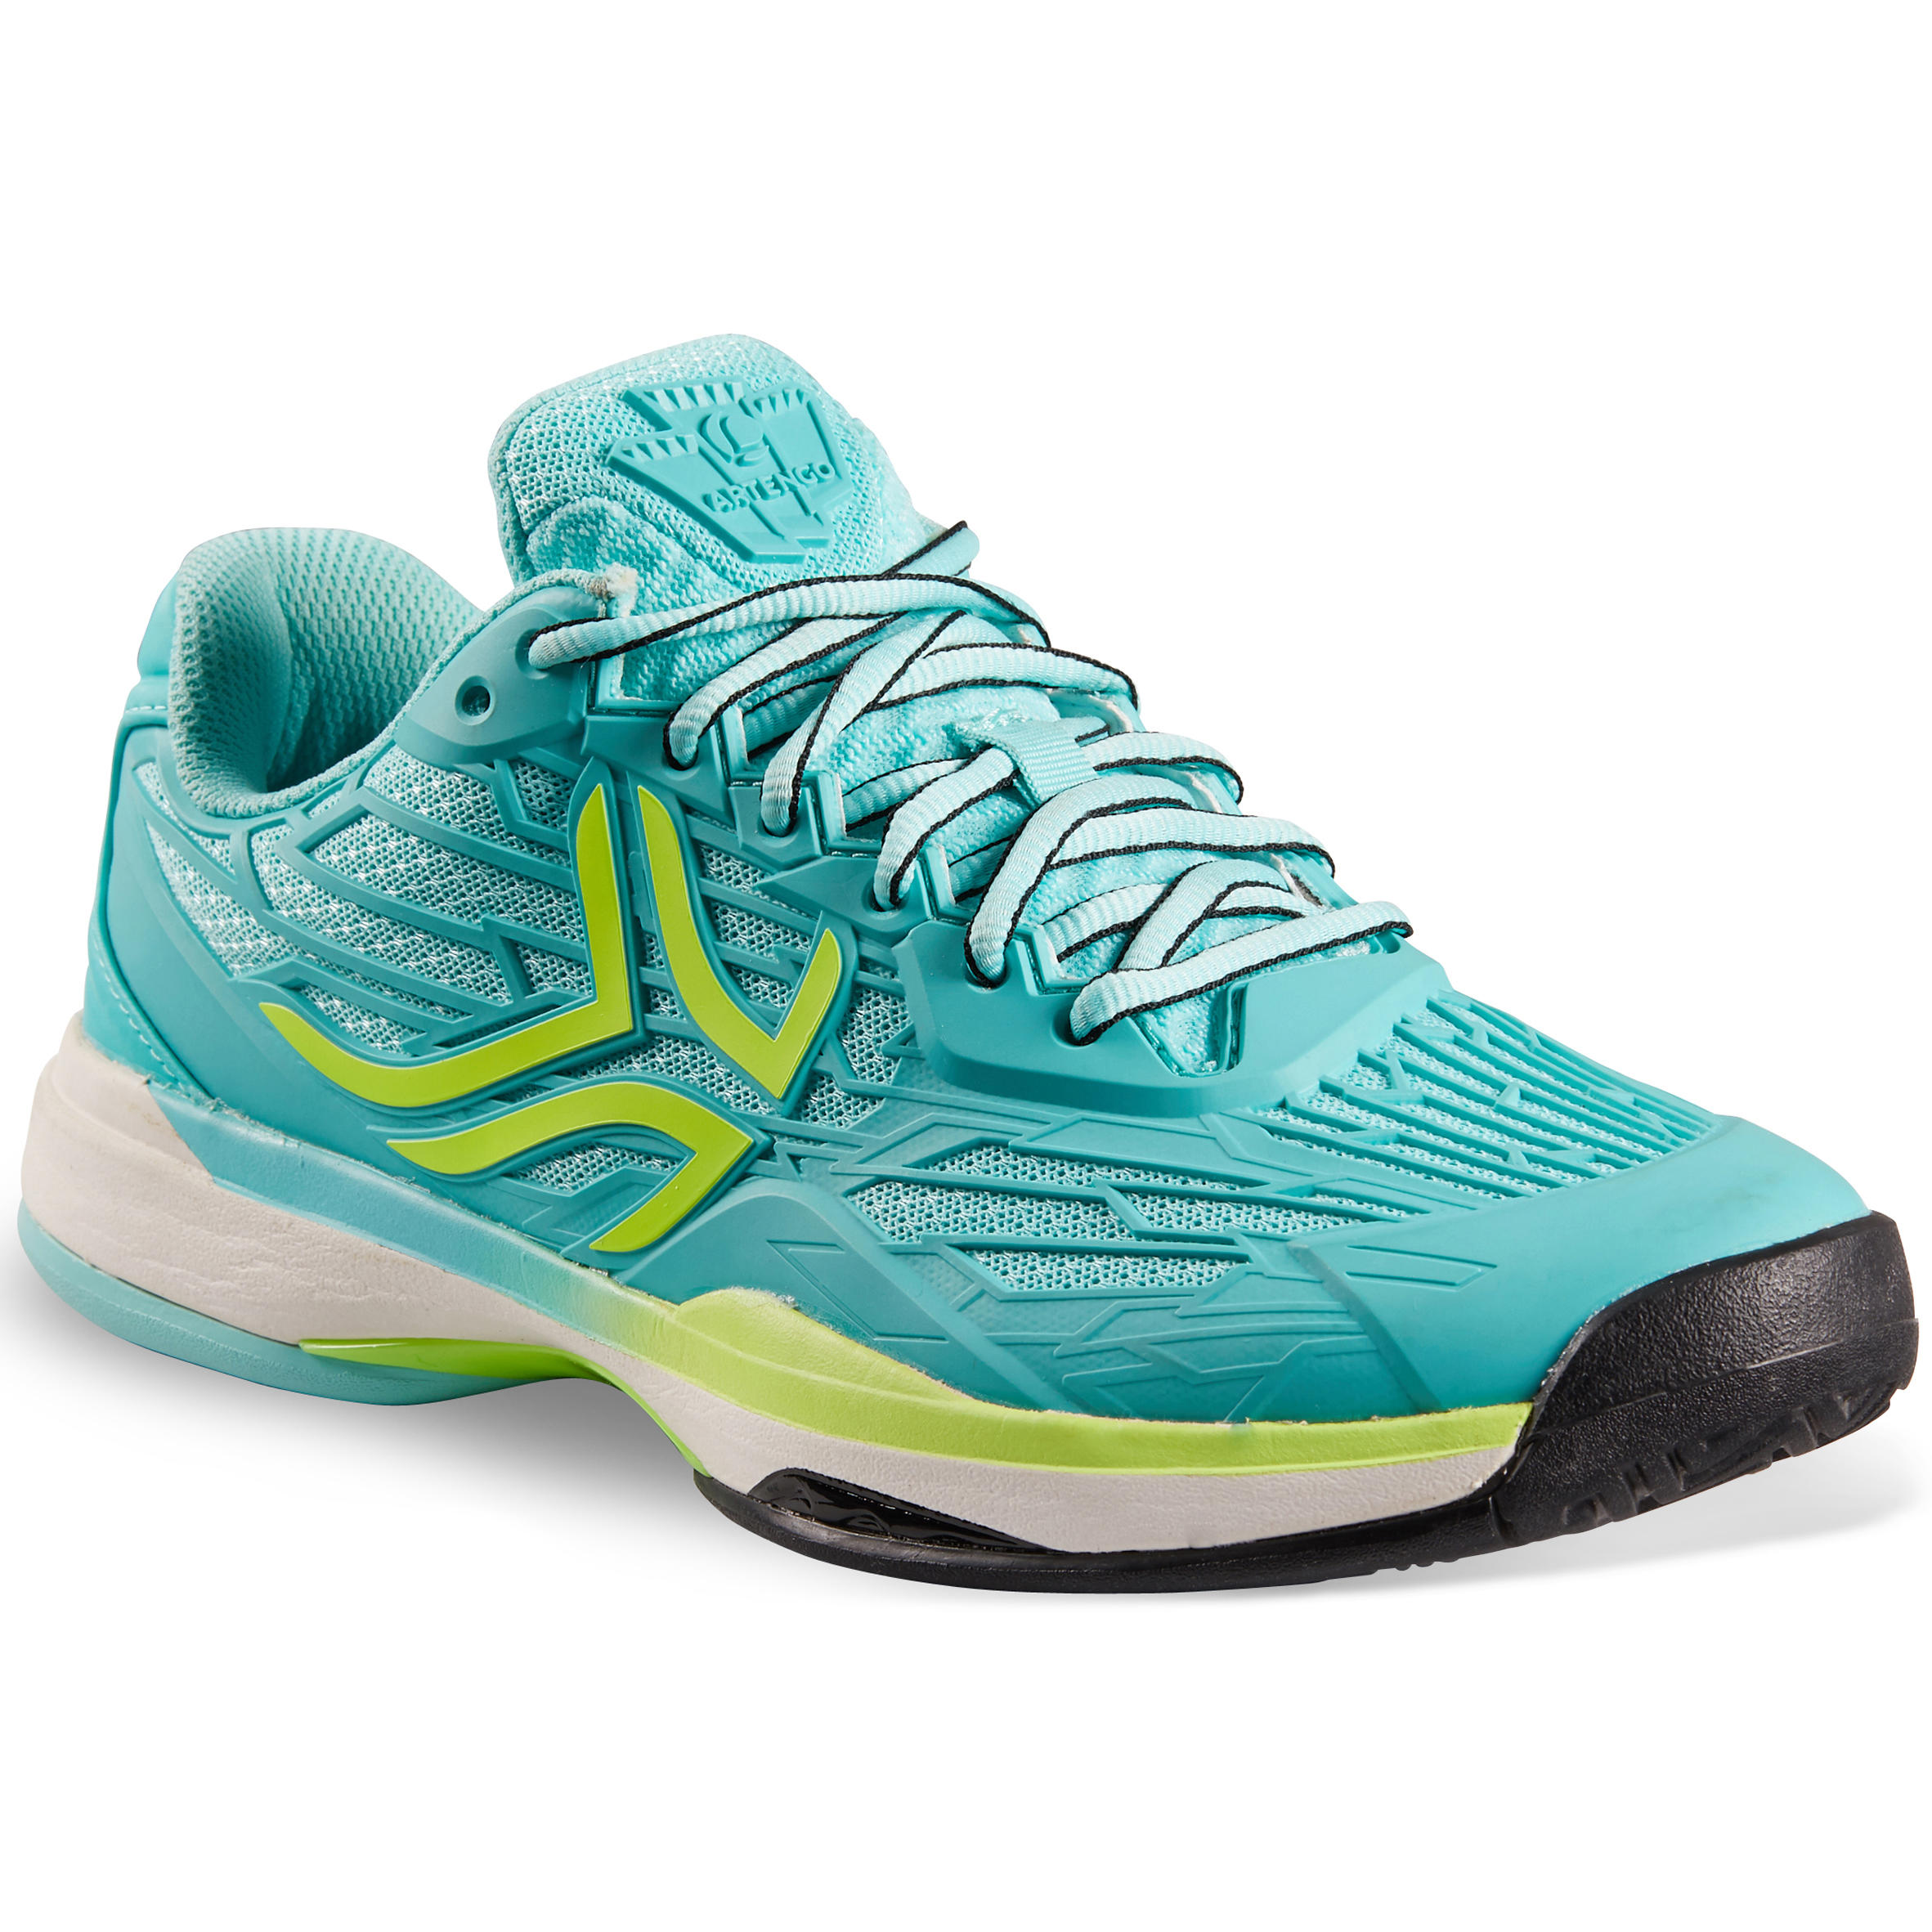 ARTENGO TS990 Women's Tennis Shoes - Turquoise